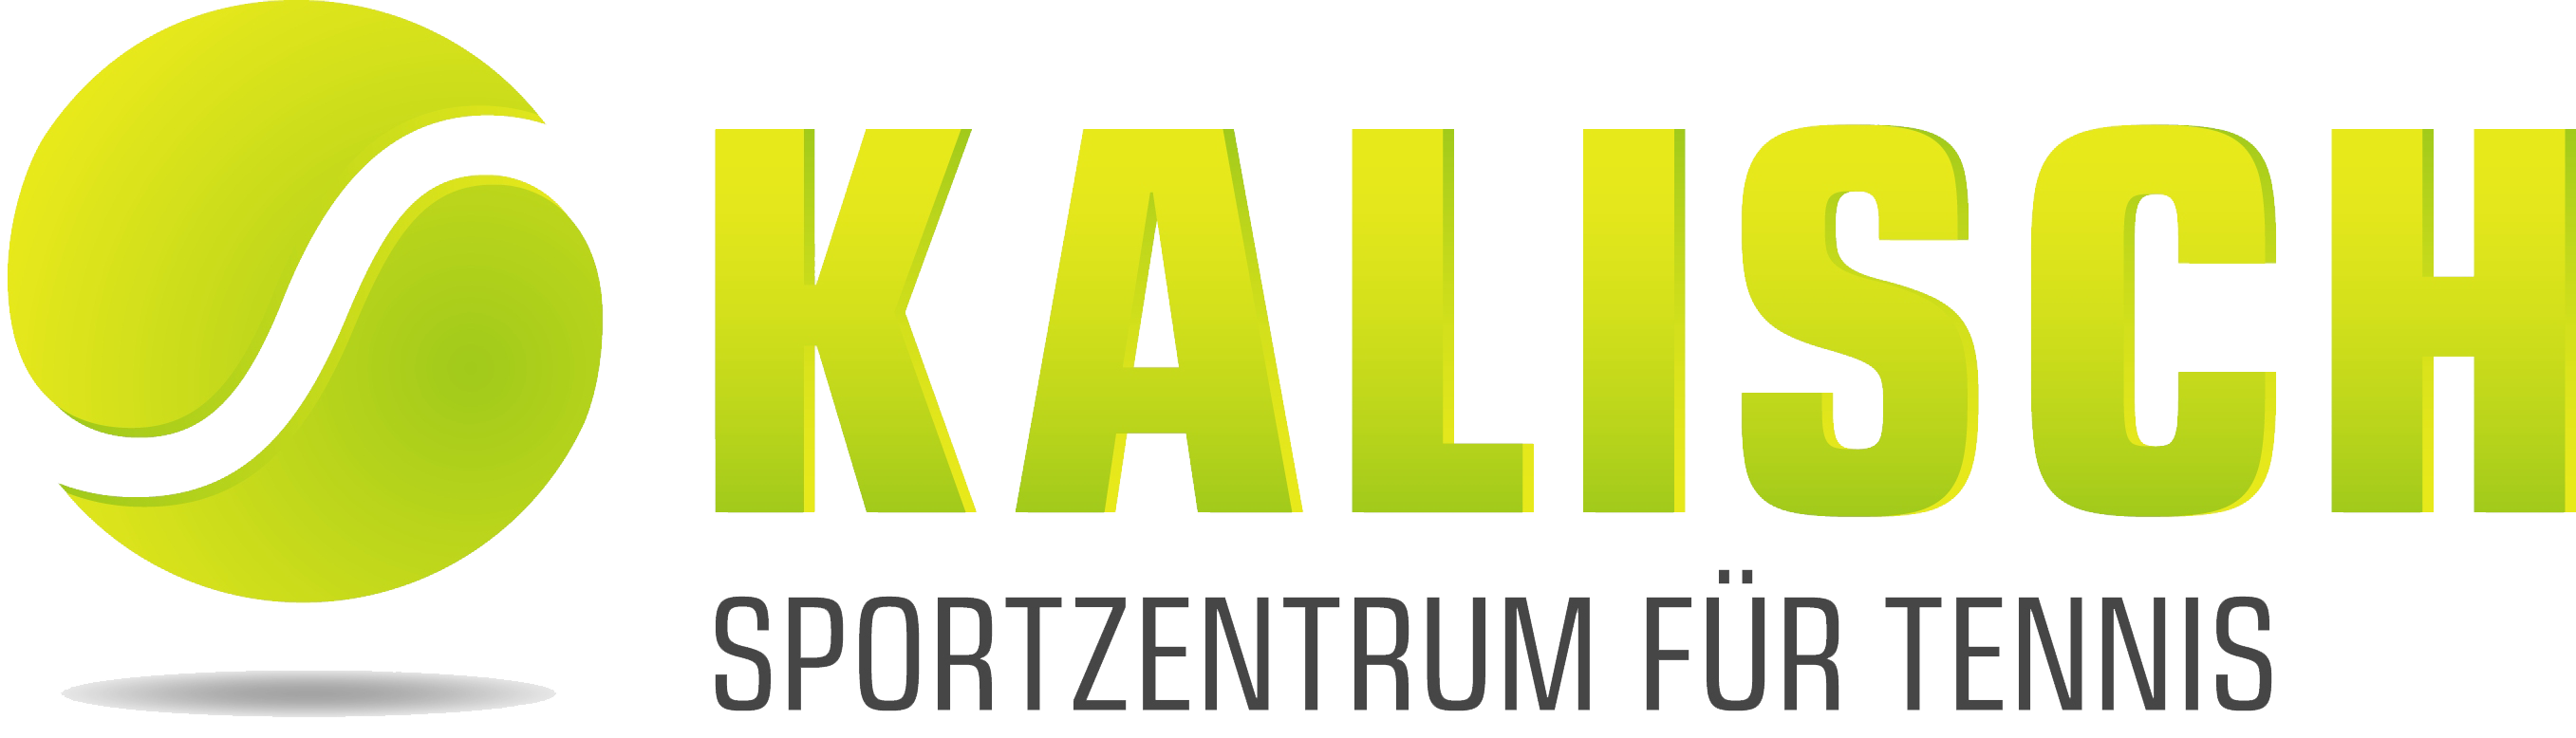 kalisch-sportzentrum-fuer-tennis